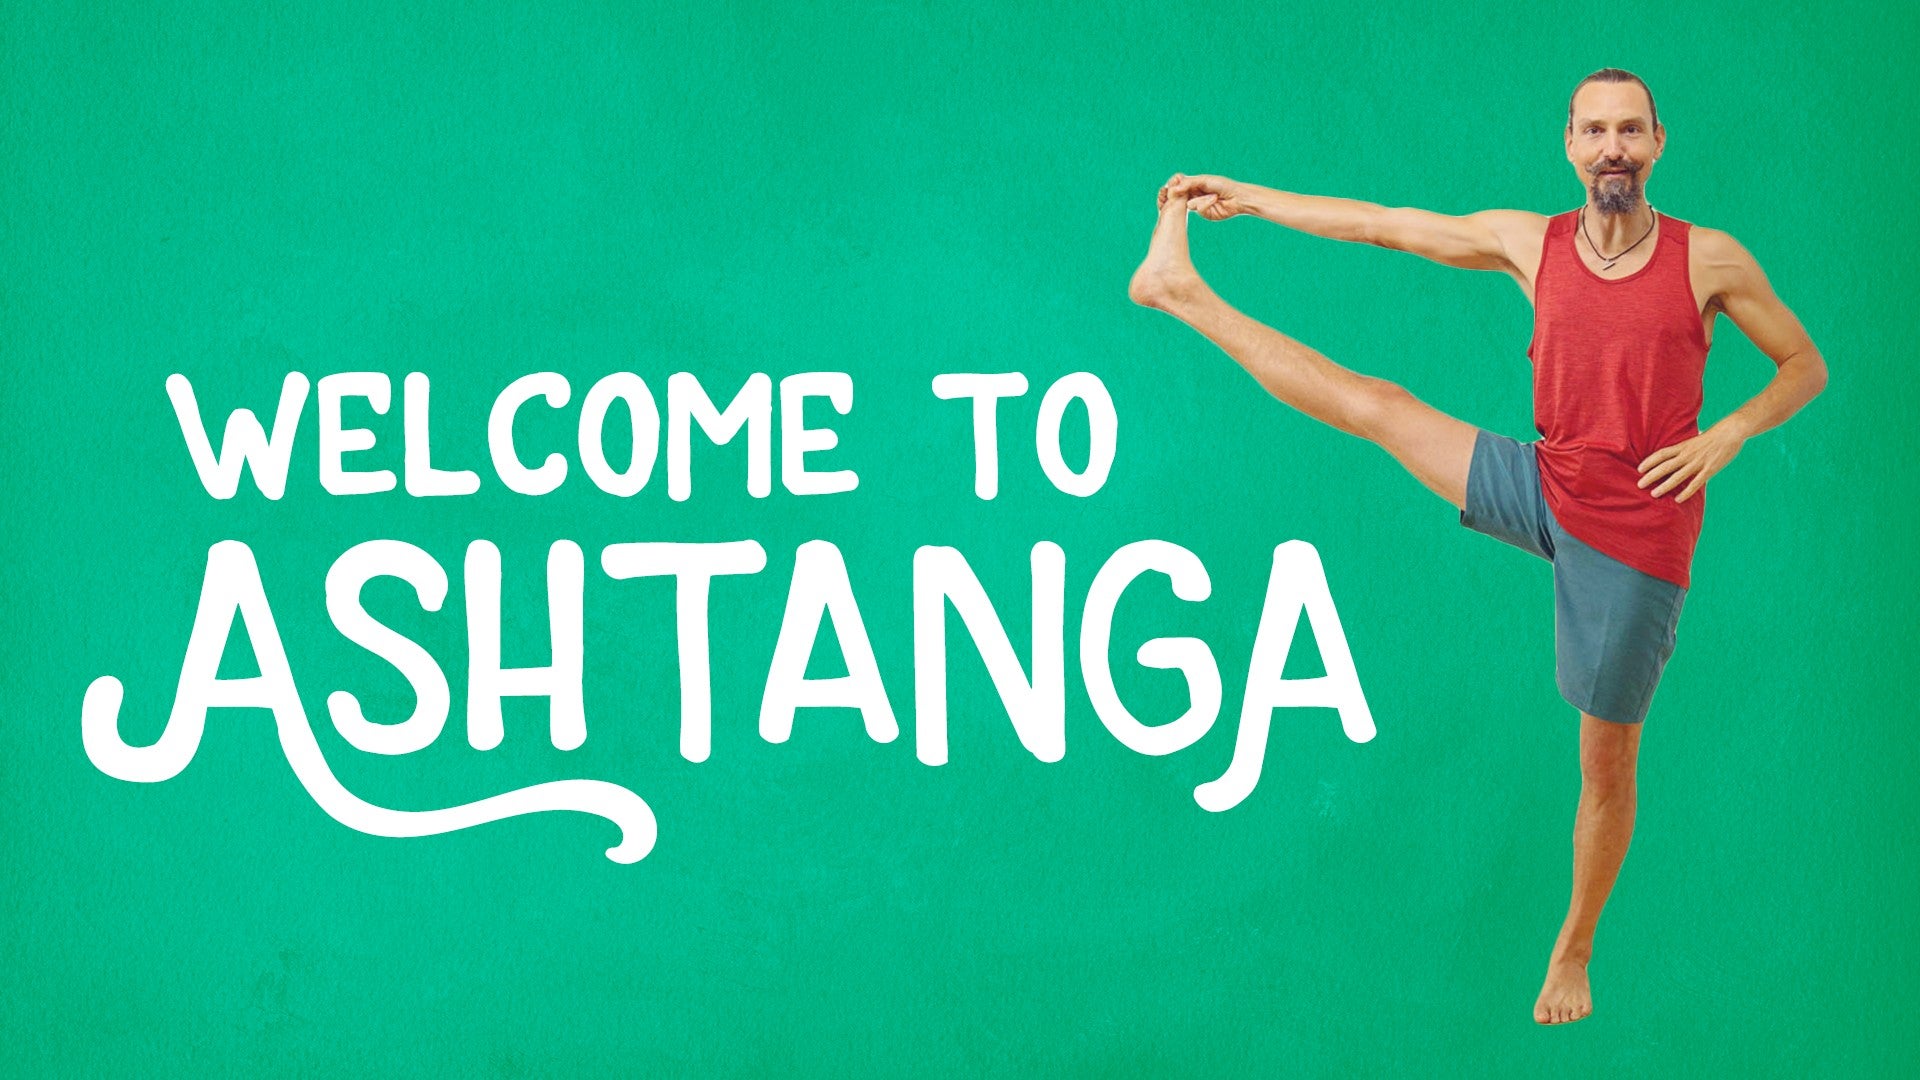 Welcome to Ashtanga Artwork